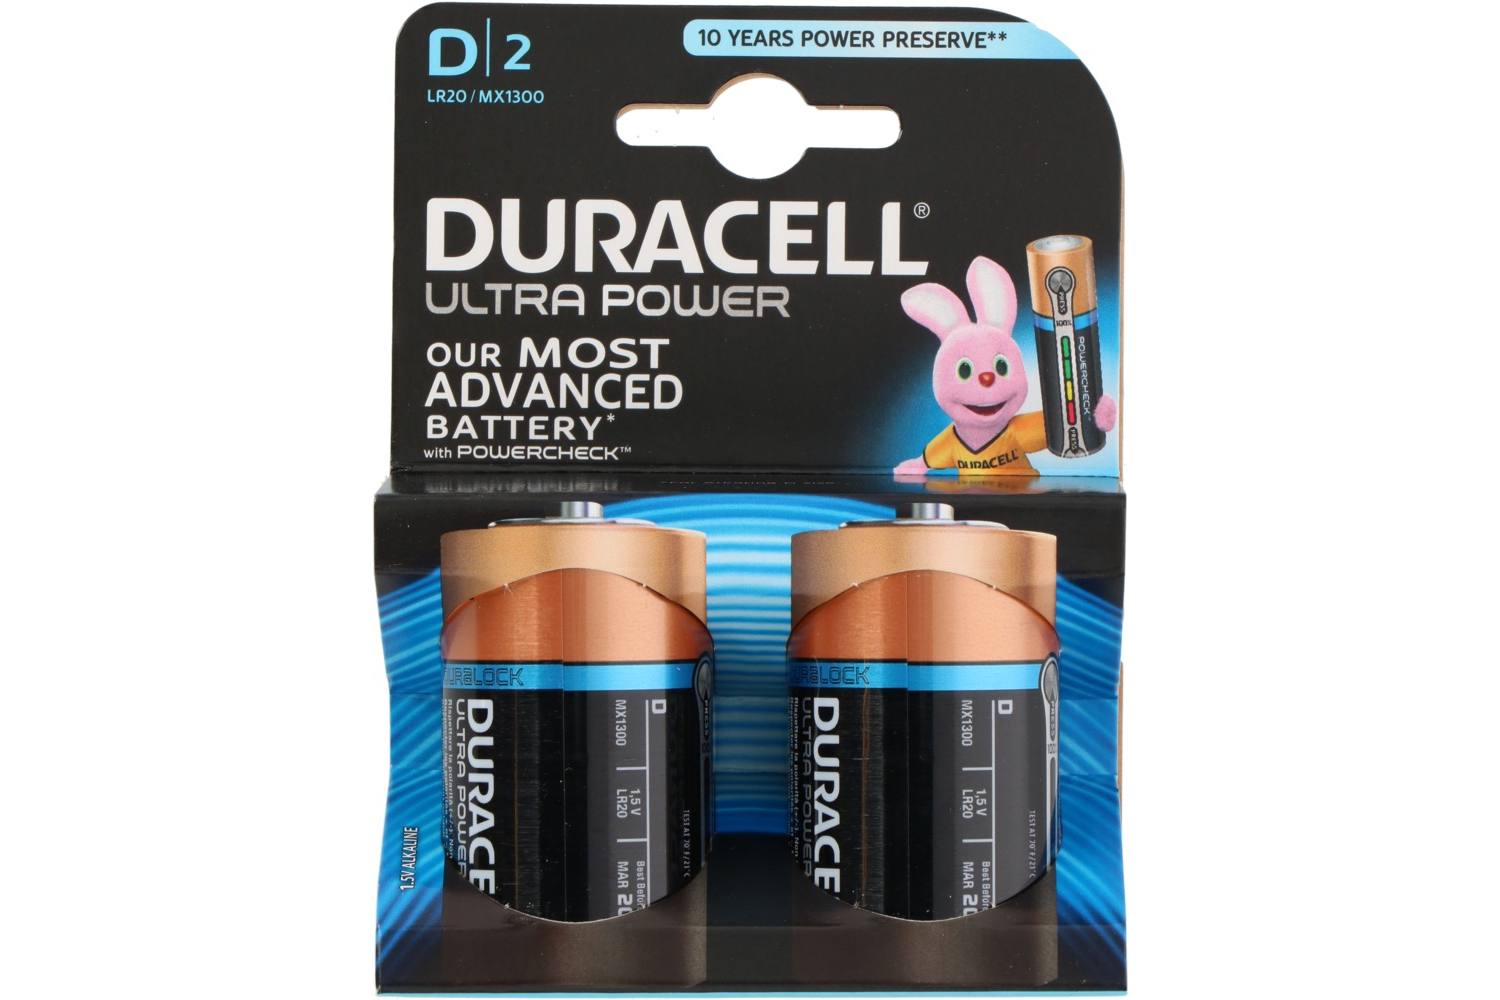 Batterij, Duracell Ultra Power, D, 2 stuks, LR20 / MX1300 2